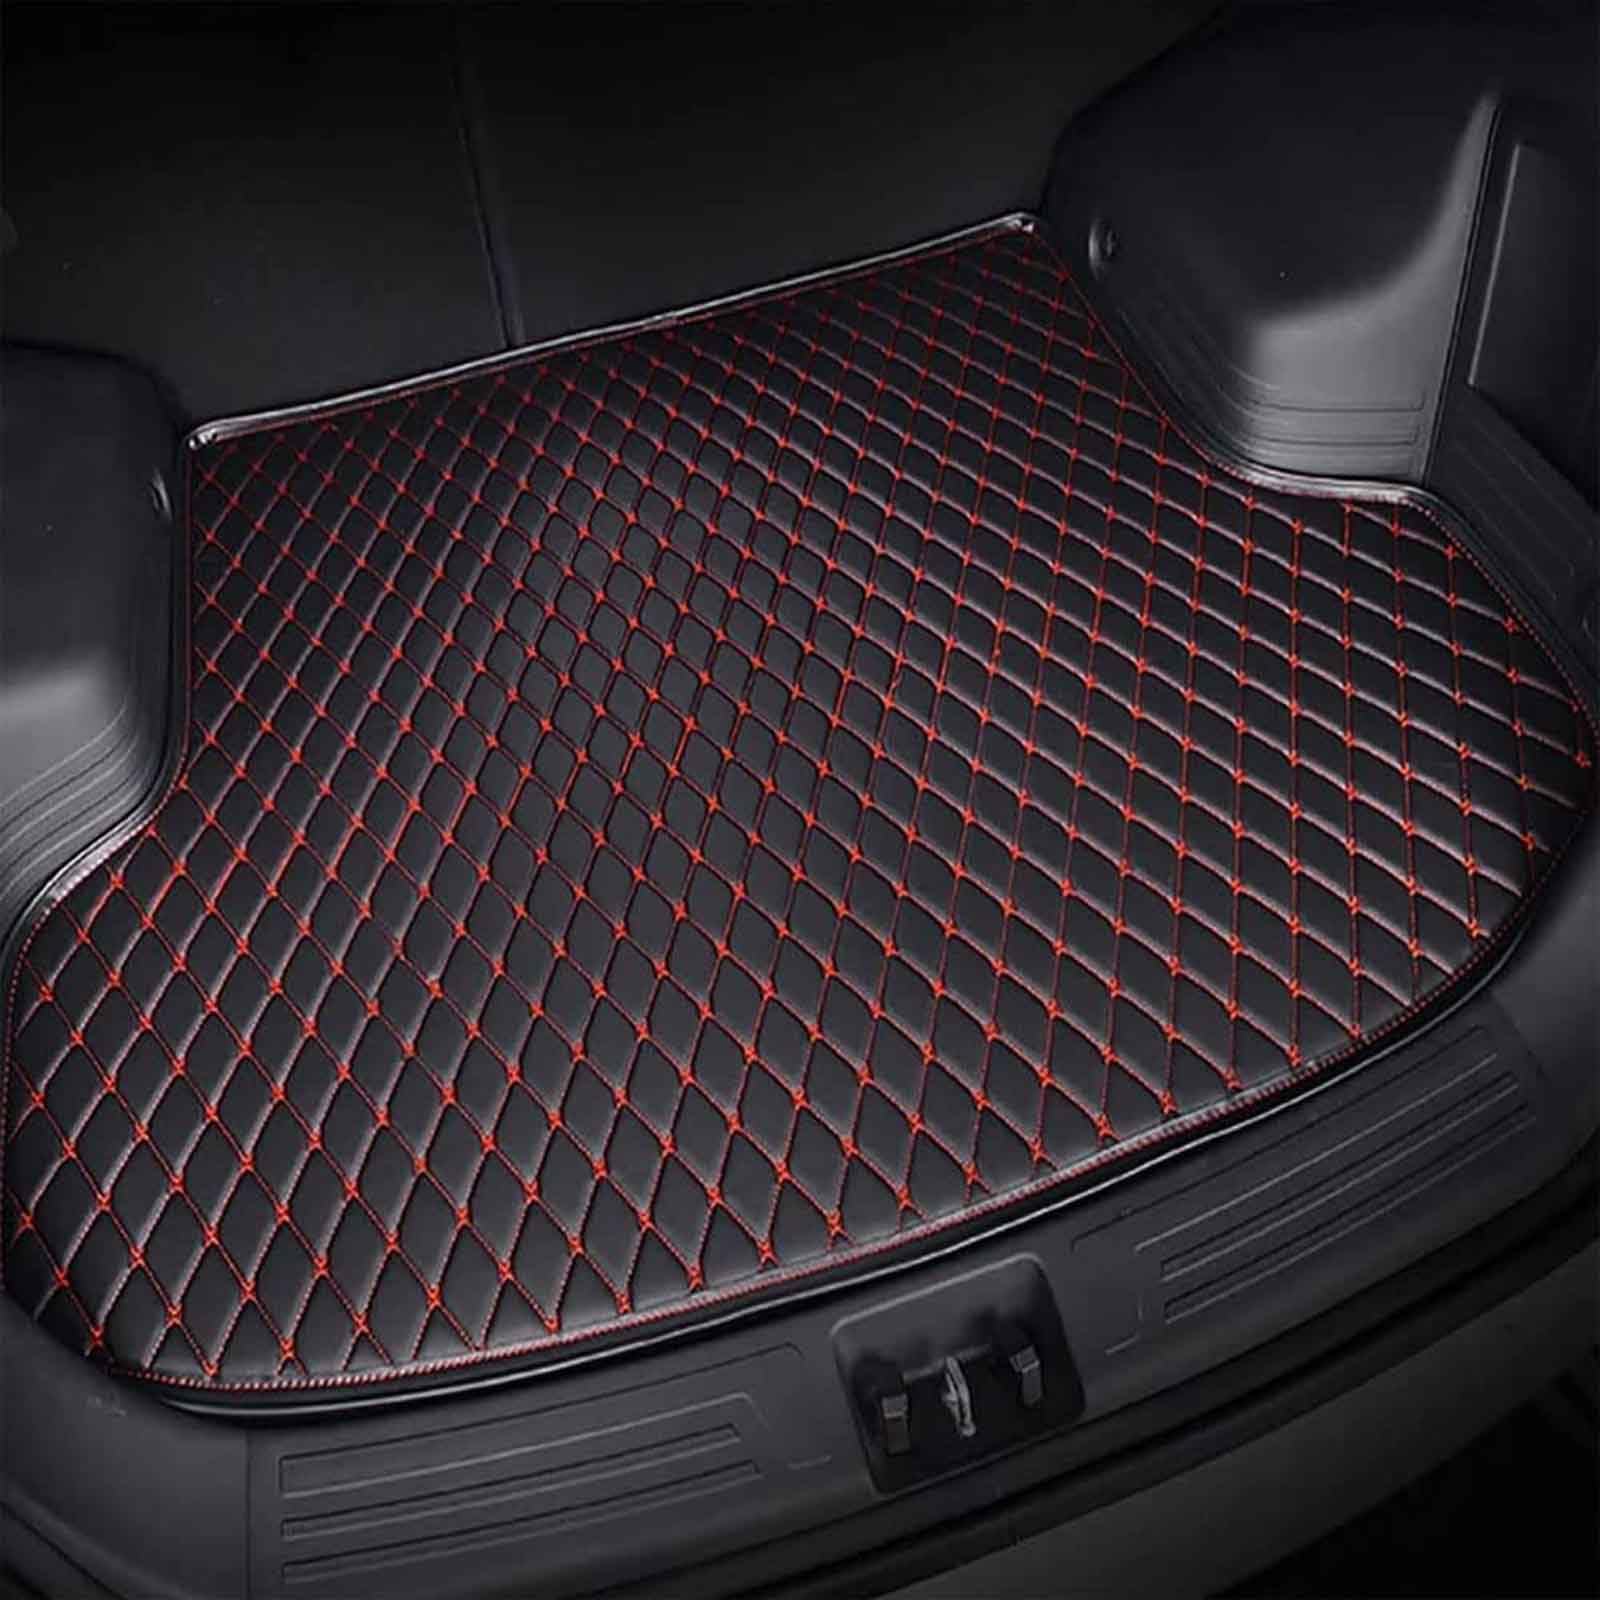 Kofferraummatte für Toyo-TA Aqua 2019 - Auto Leder Kofferraumwanne - Allwetter Kofferraum Schutzmatte - Wasserdicht Gepäckraumwanne - Gepäckraumeinlage, Black Red von FERFXN